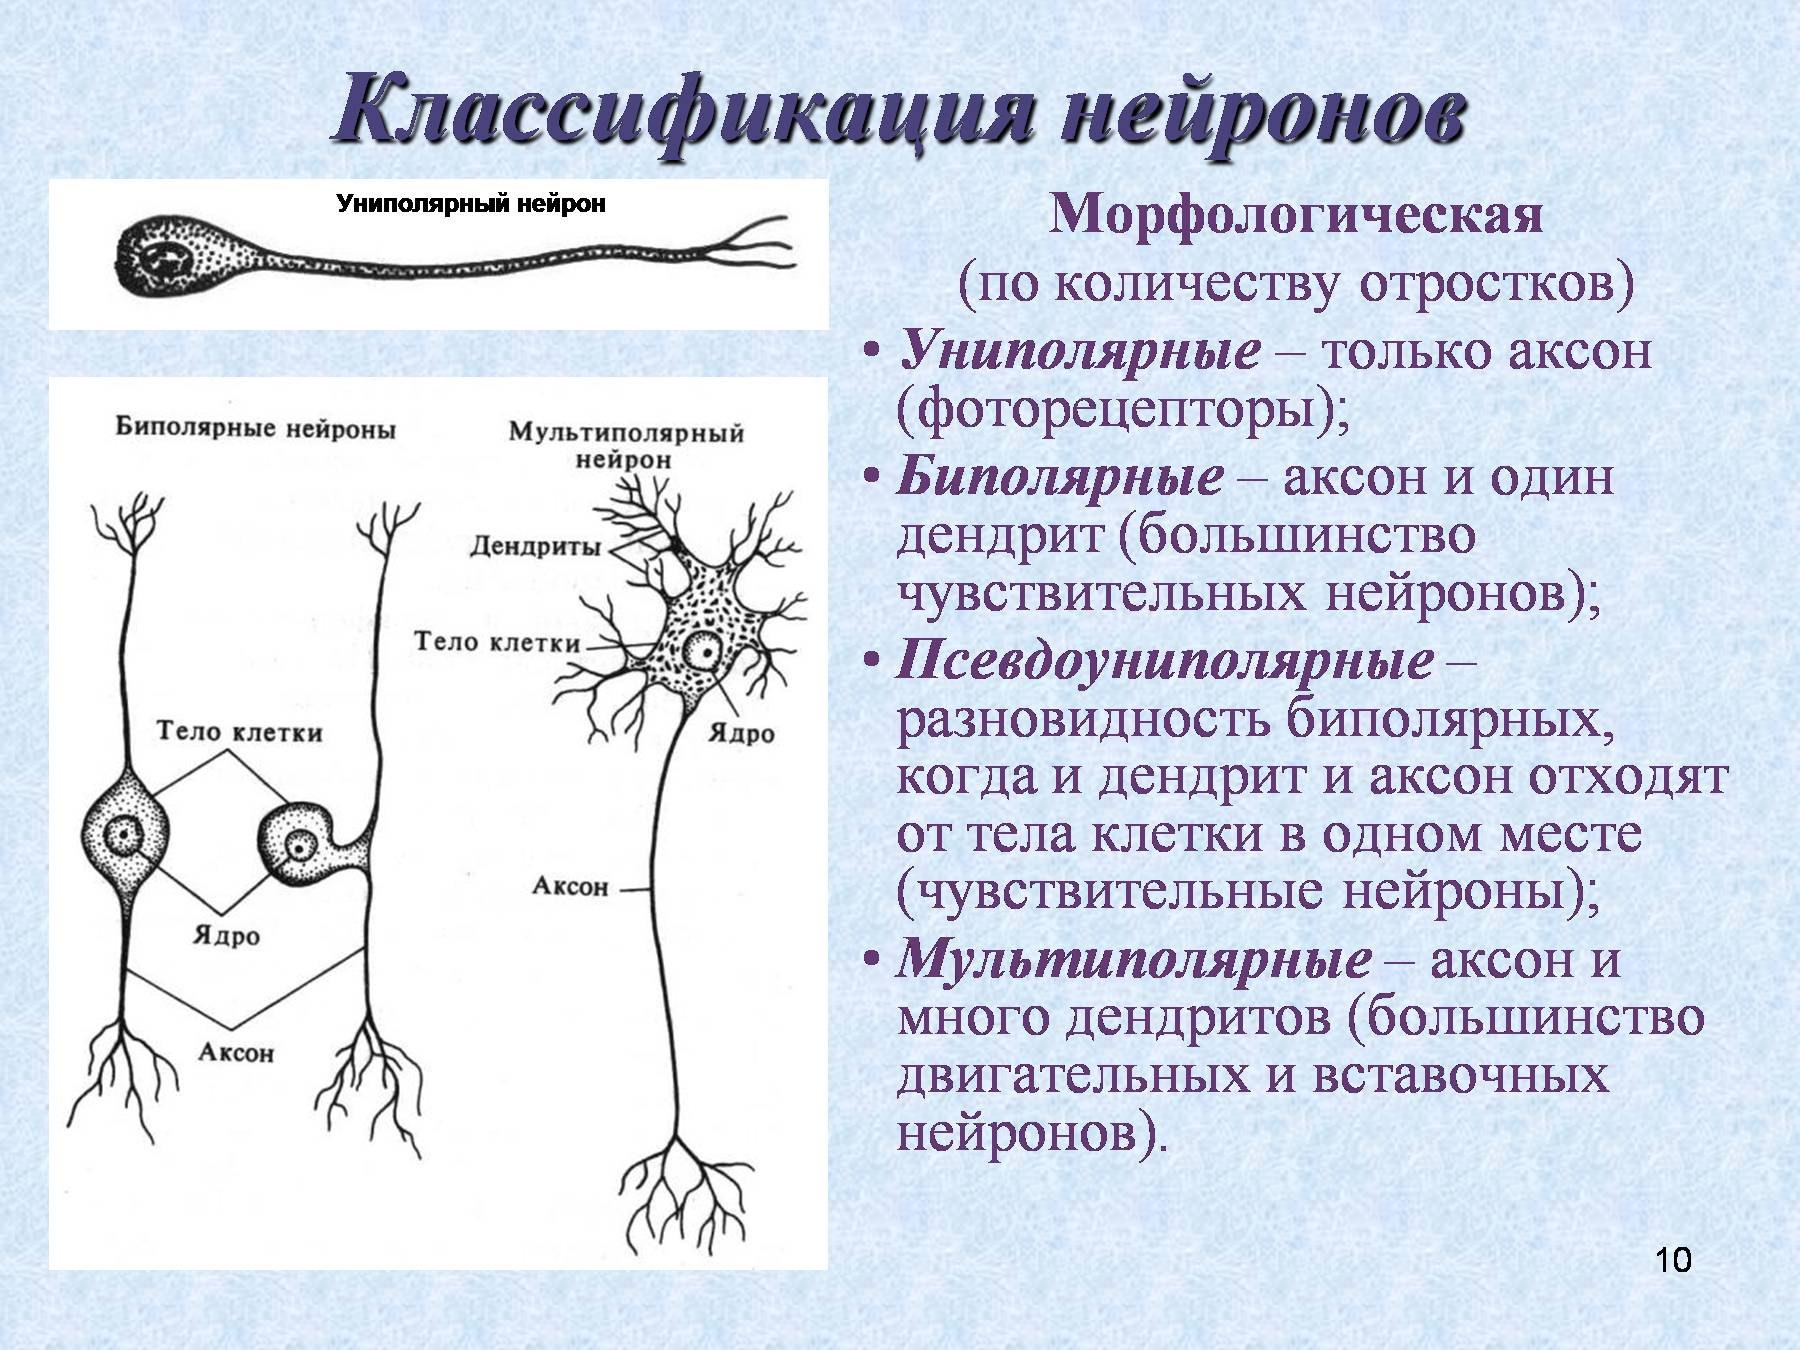 Классификация нейронов псевдоуниполярные